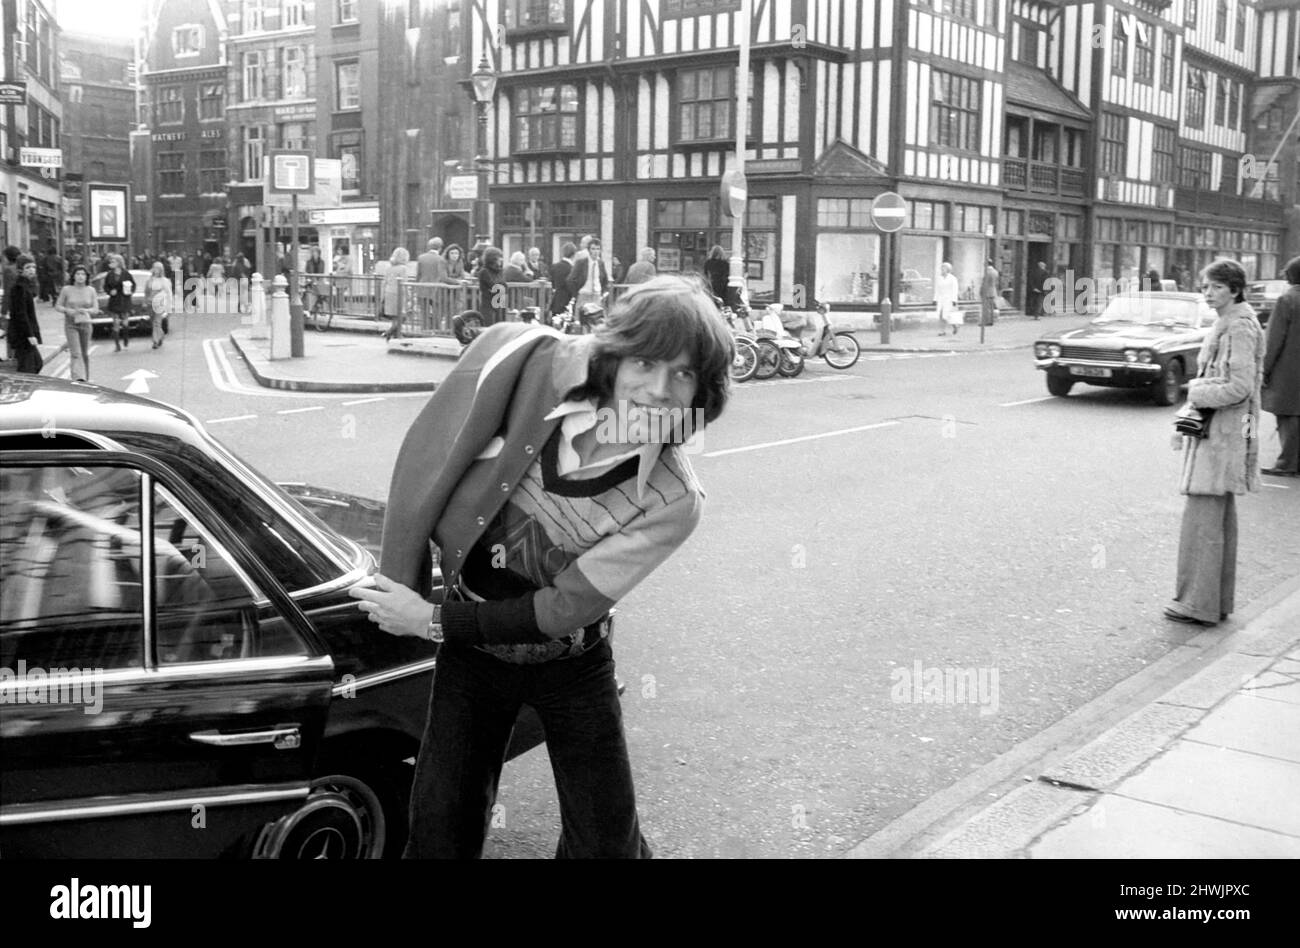 Keith Richard, 29 il chitarrista capo del gruppo Rolling Stones ha ammesso oggi di avere eroina e cannabis nella sua Chelsea, London Home. Egli ha anche dichiarato colpevole presso il tribunale di Marlborough Street di possedere illegalmente un revolver, un fucile e munizioni. Keith Richard e la sua amica Anita Pallenberg. Ottobre 1973 73-8511-004 Foto Stock